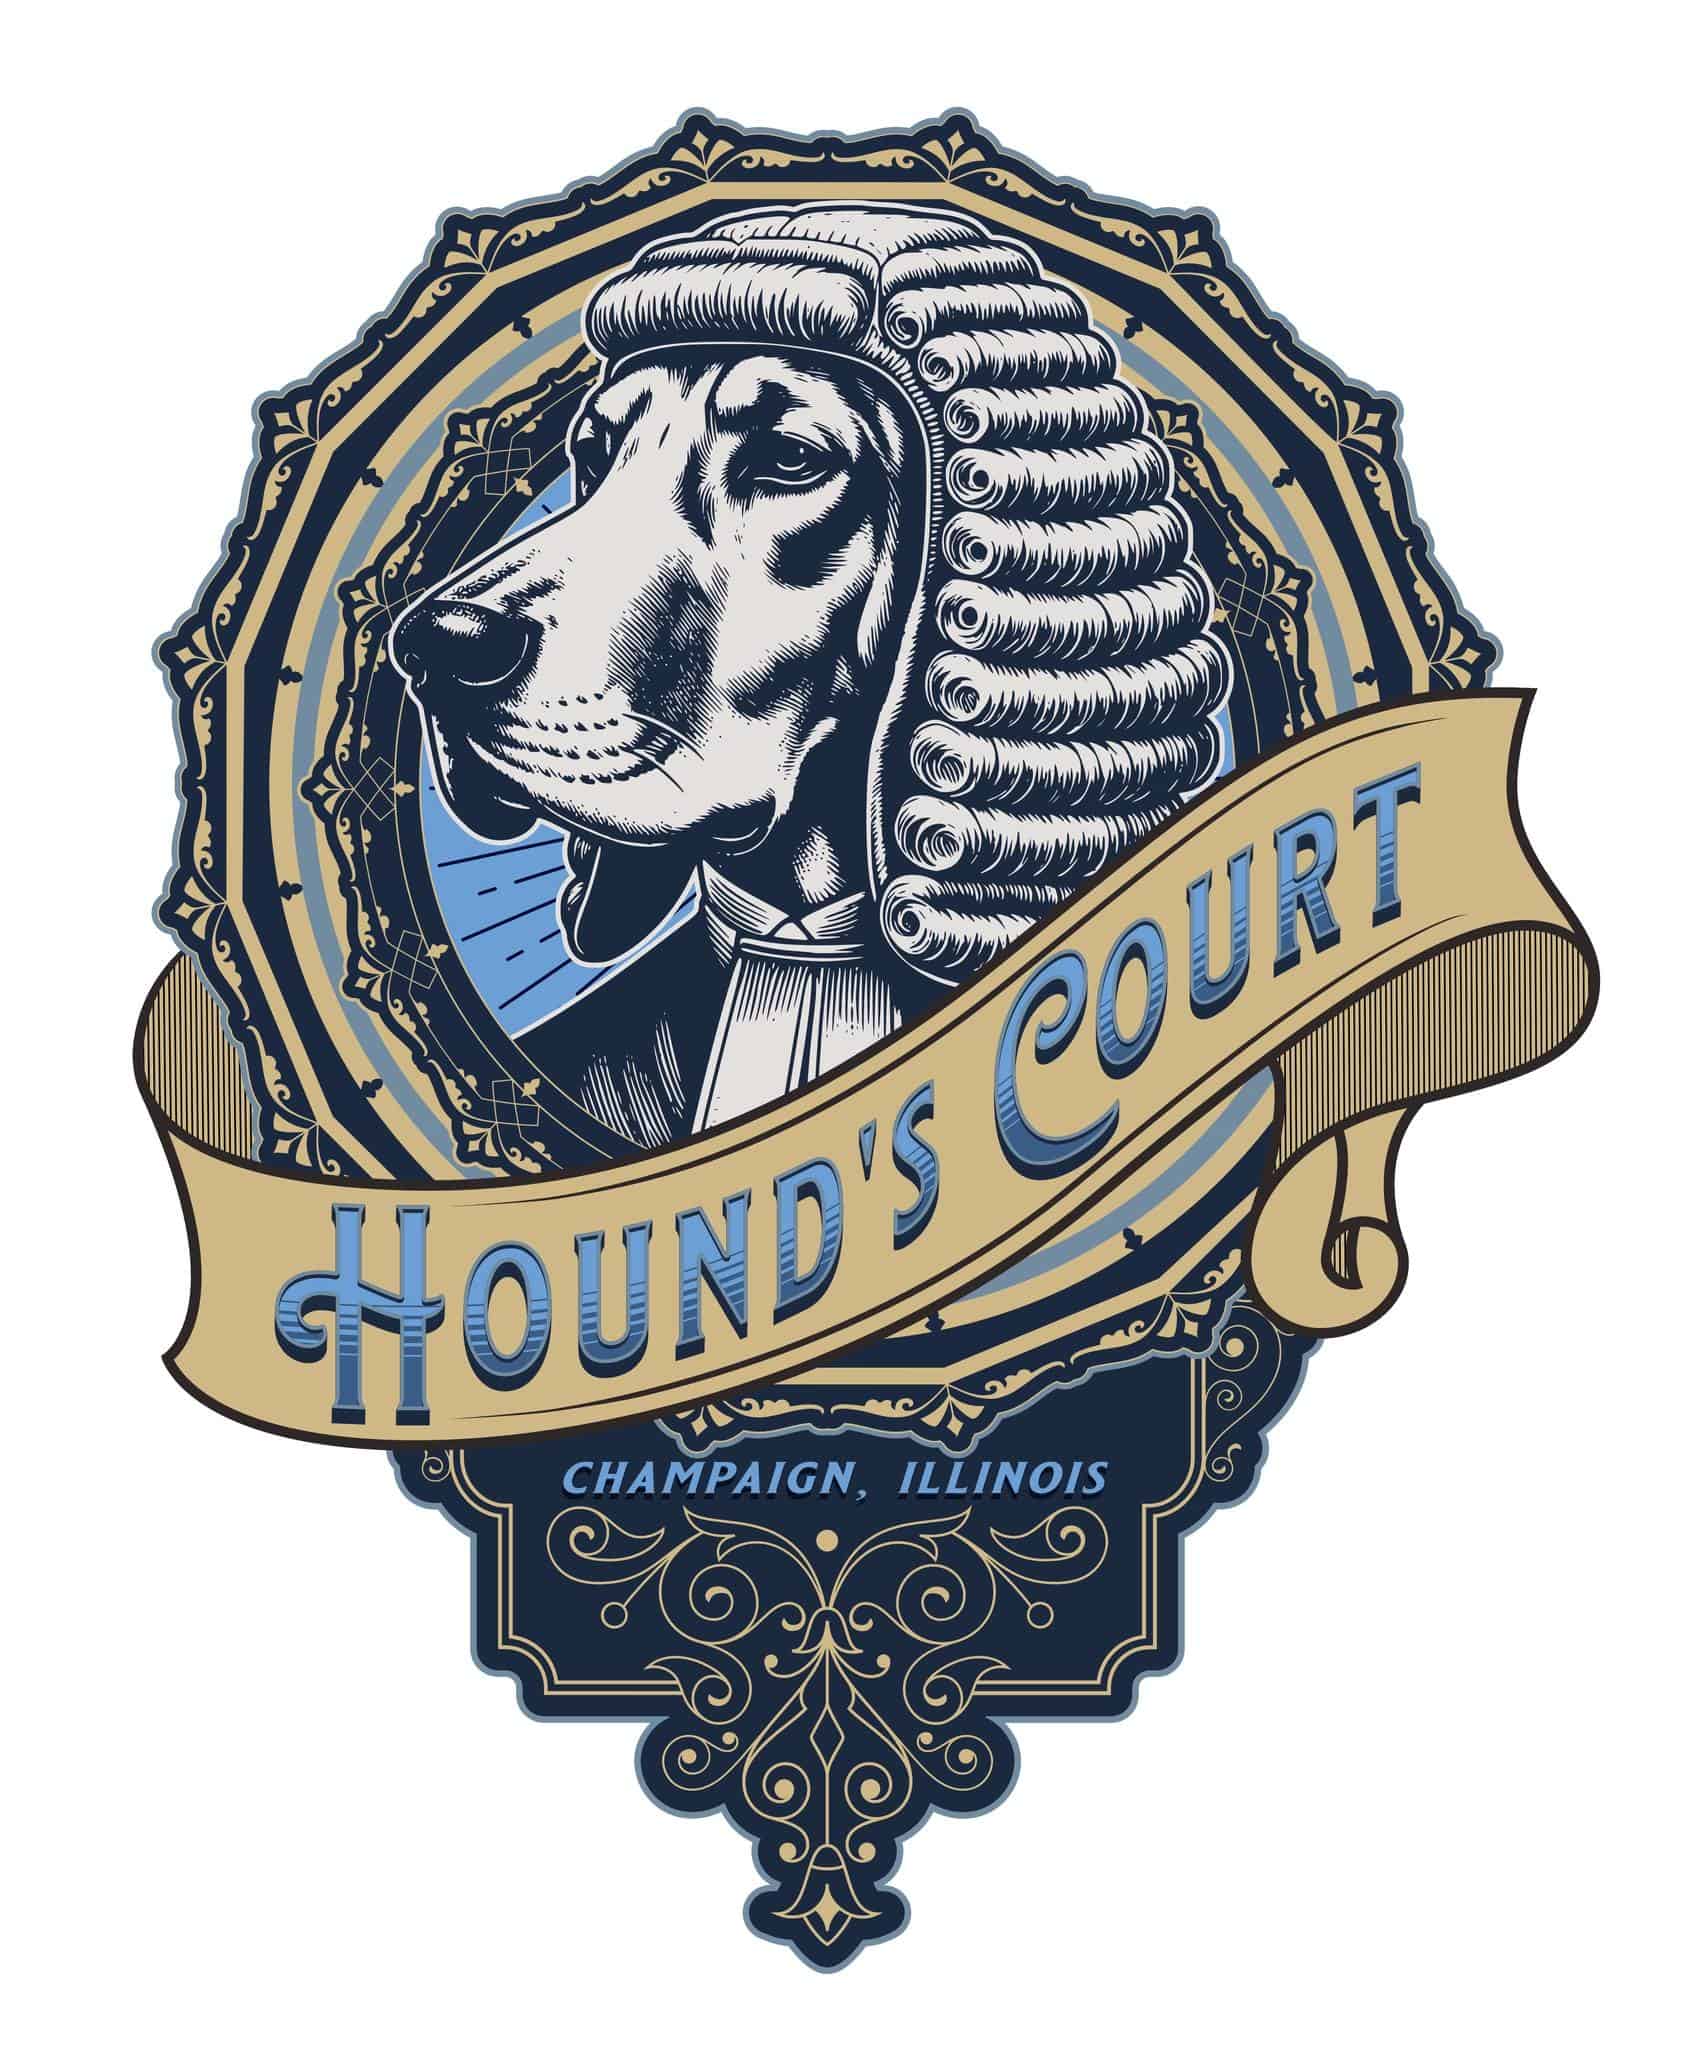 Hound's Court logo